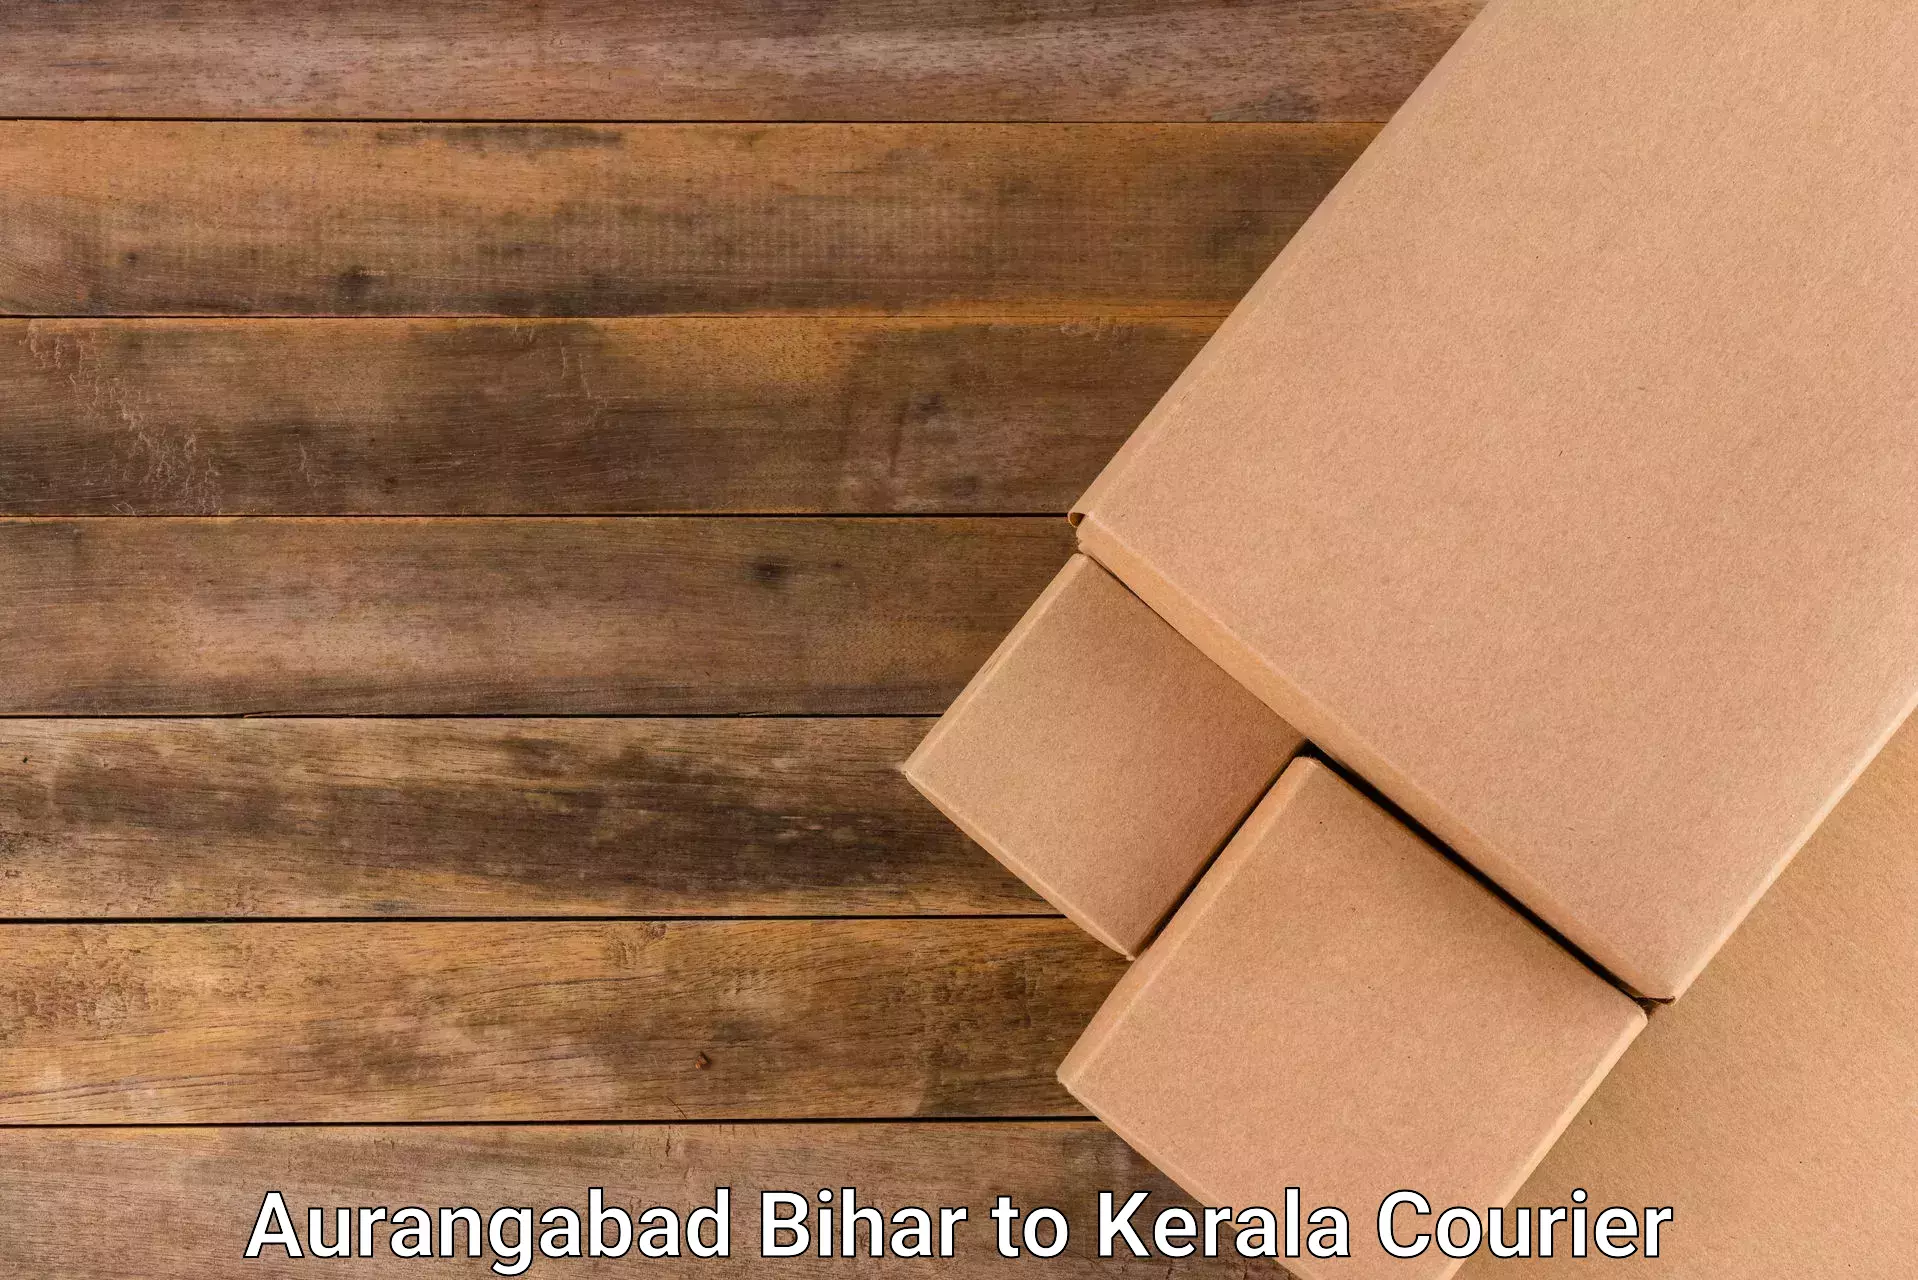 Custom courier solutions Aurangabad Bihar to Allepey